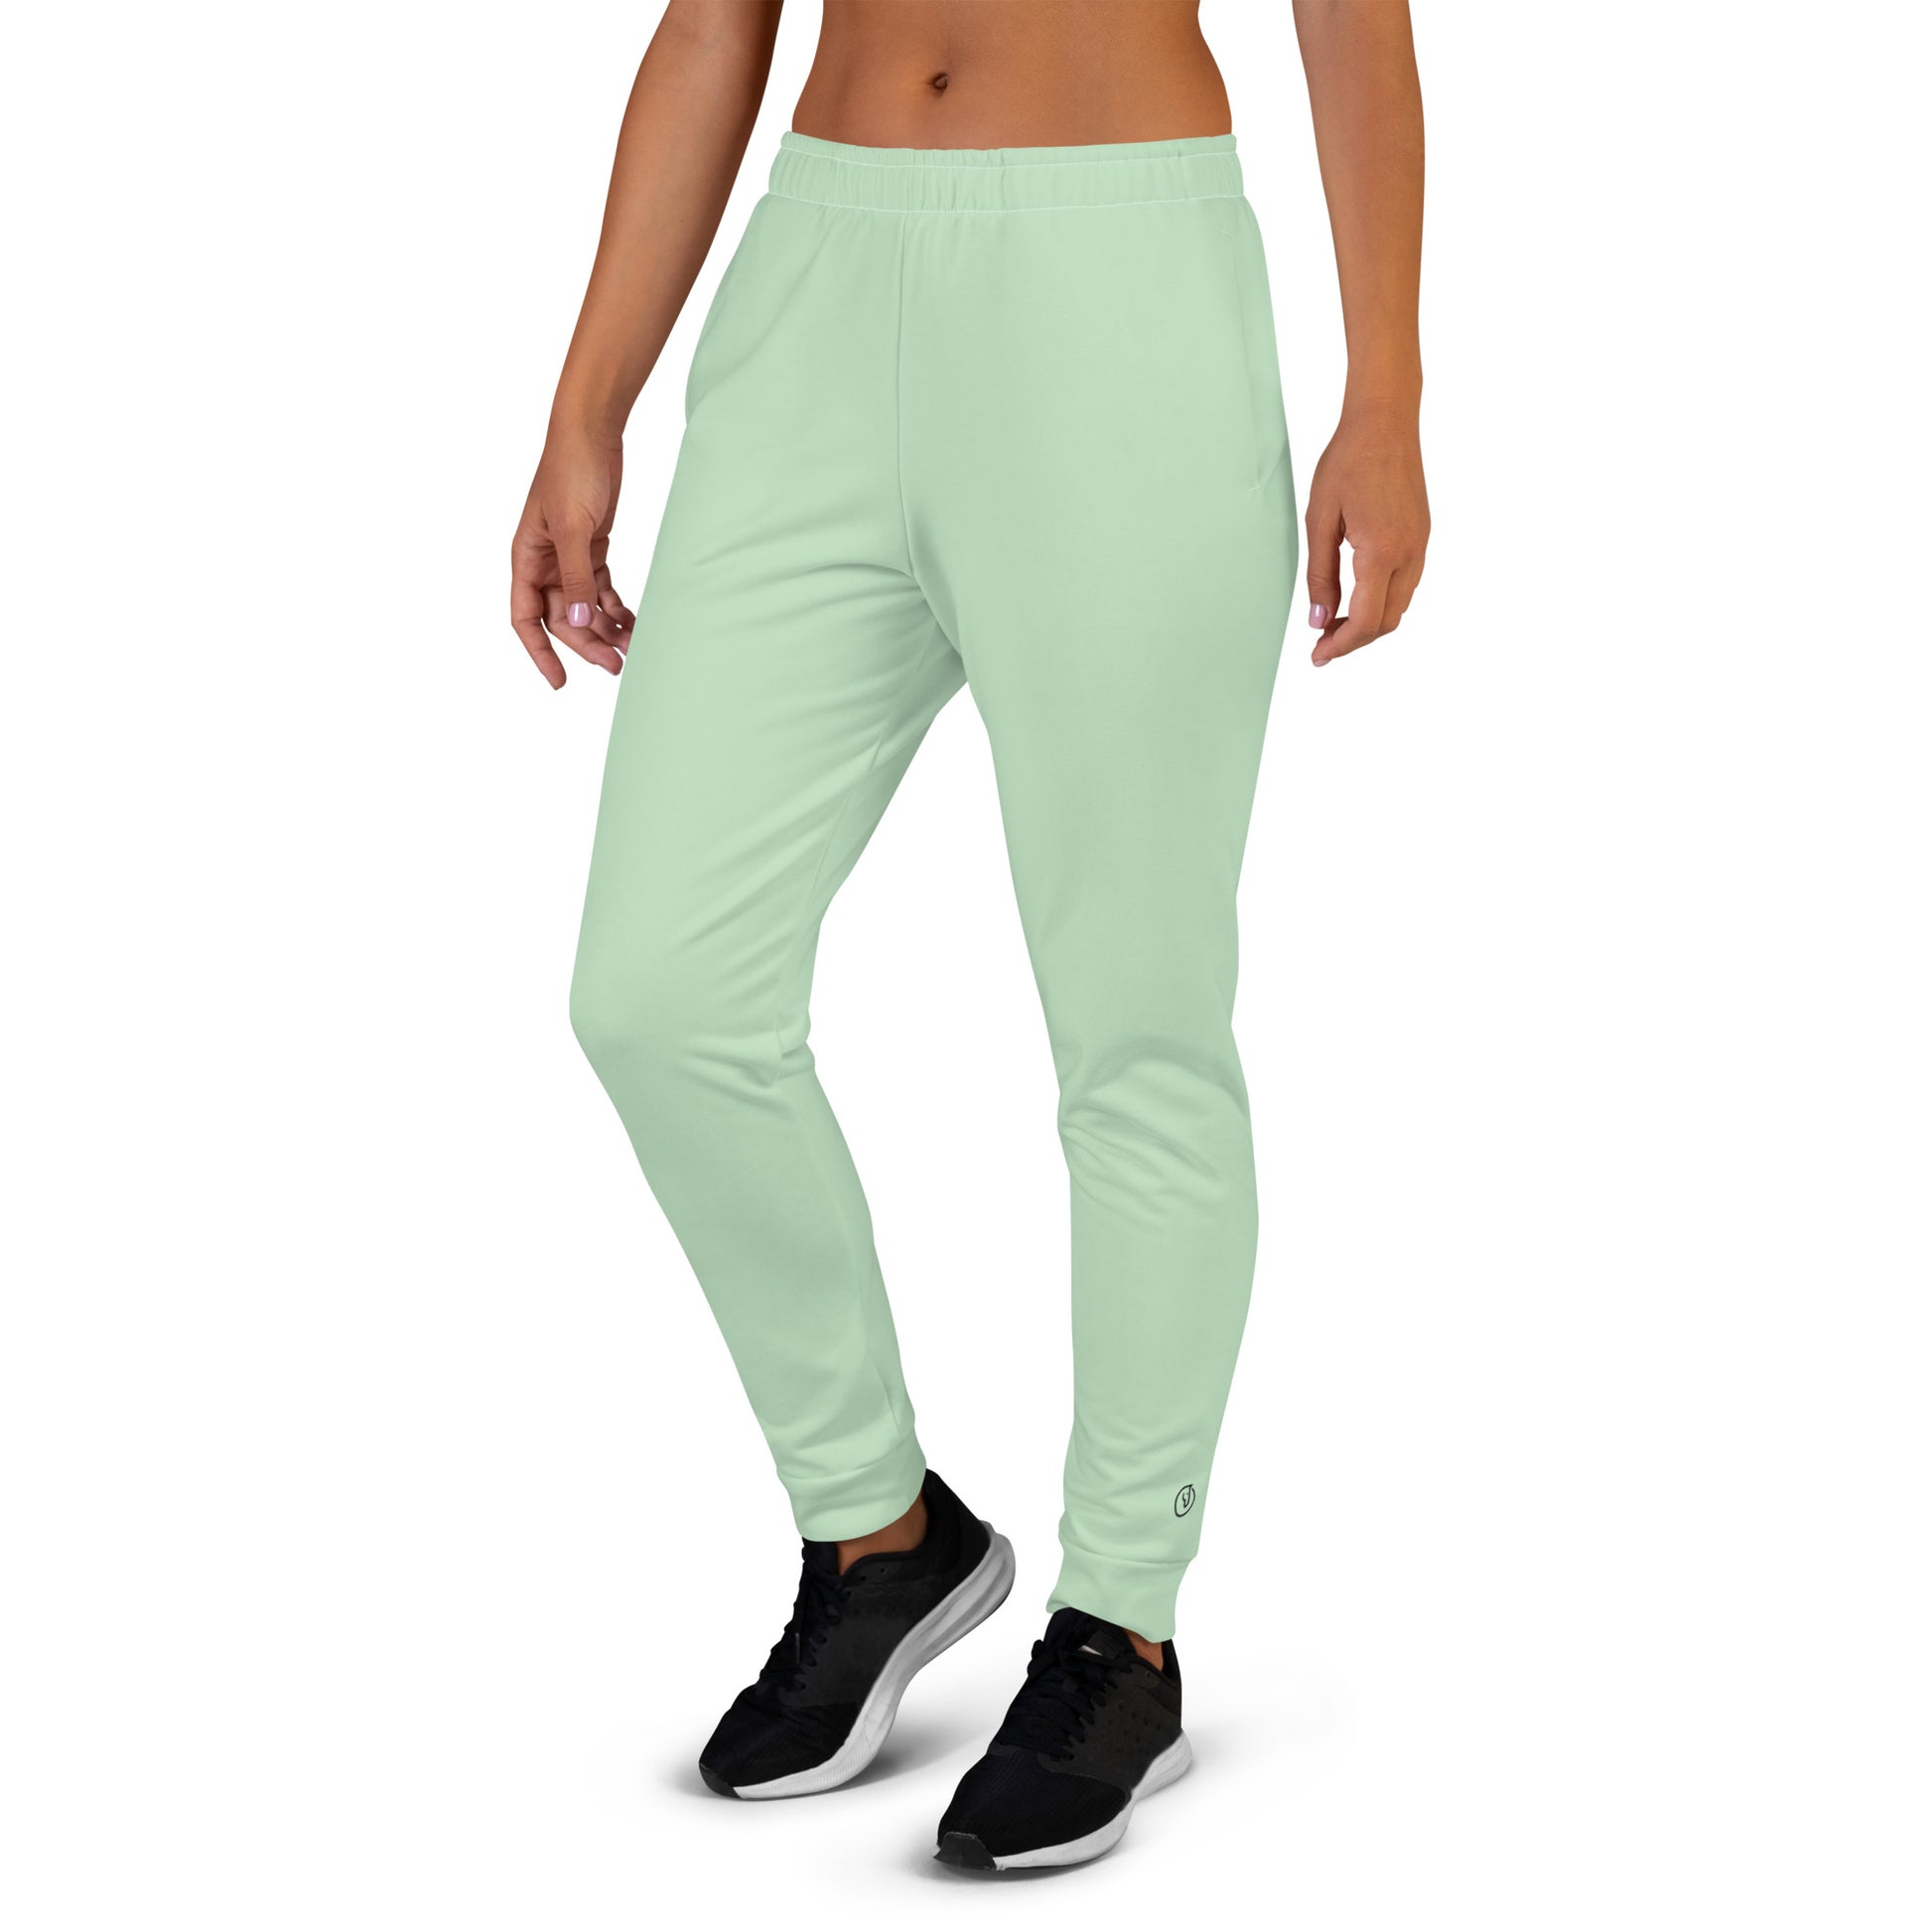 Humble Sportswear™, women's mint green fleece joggers